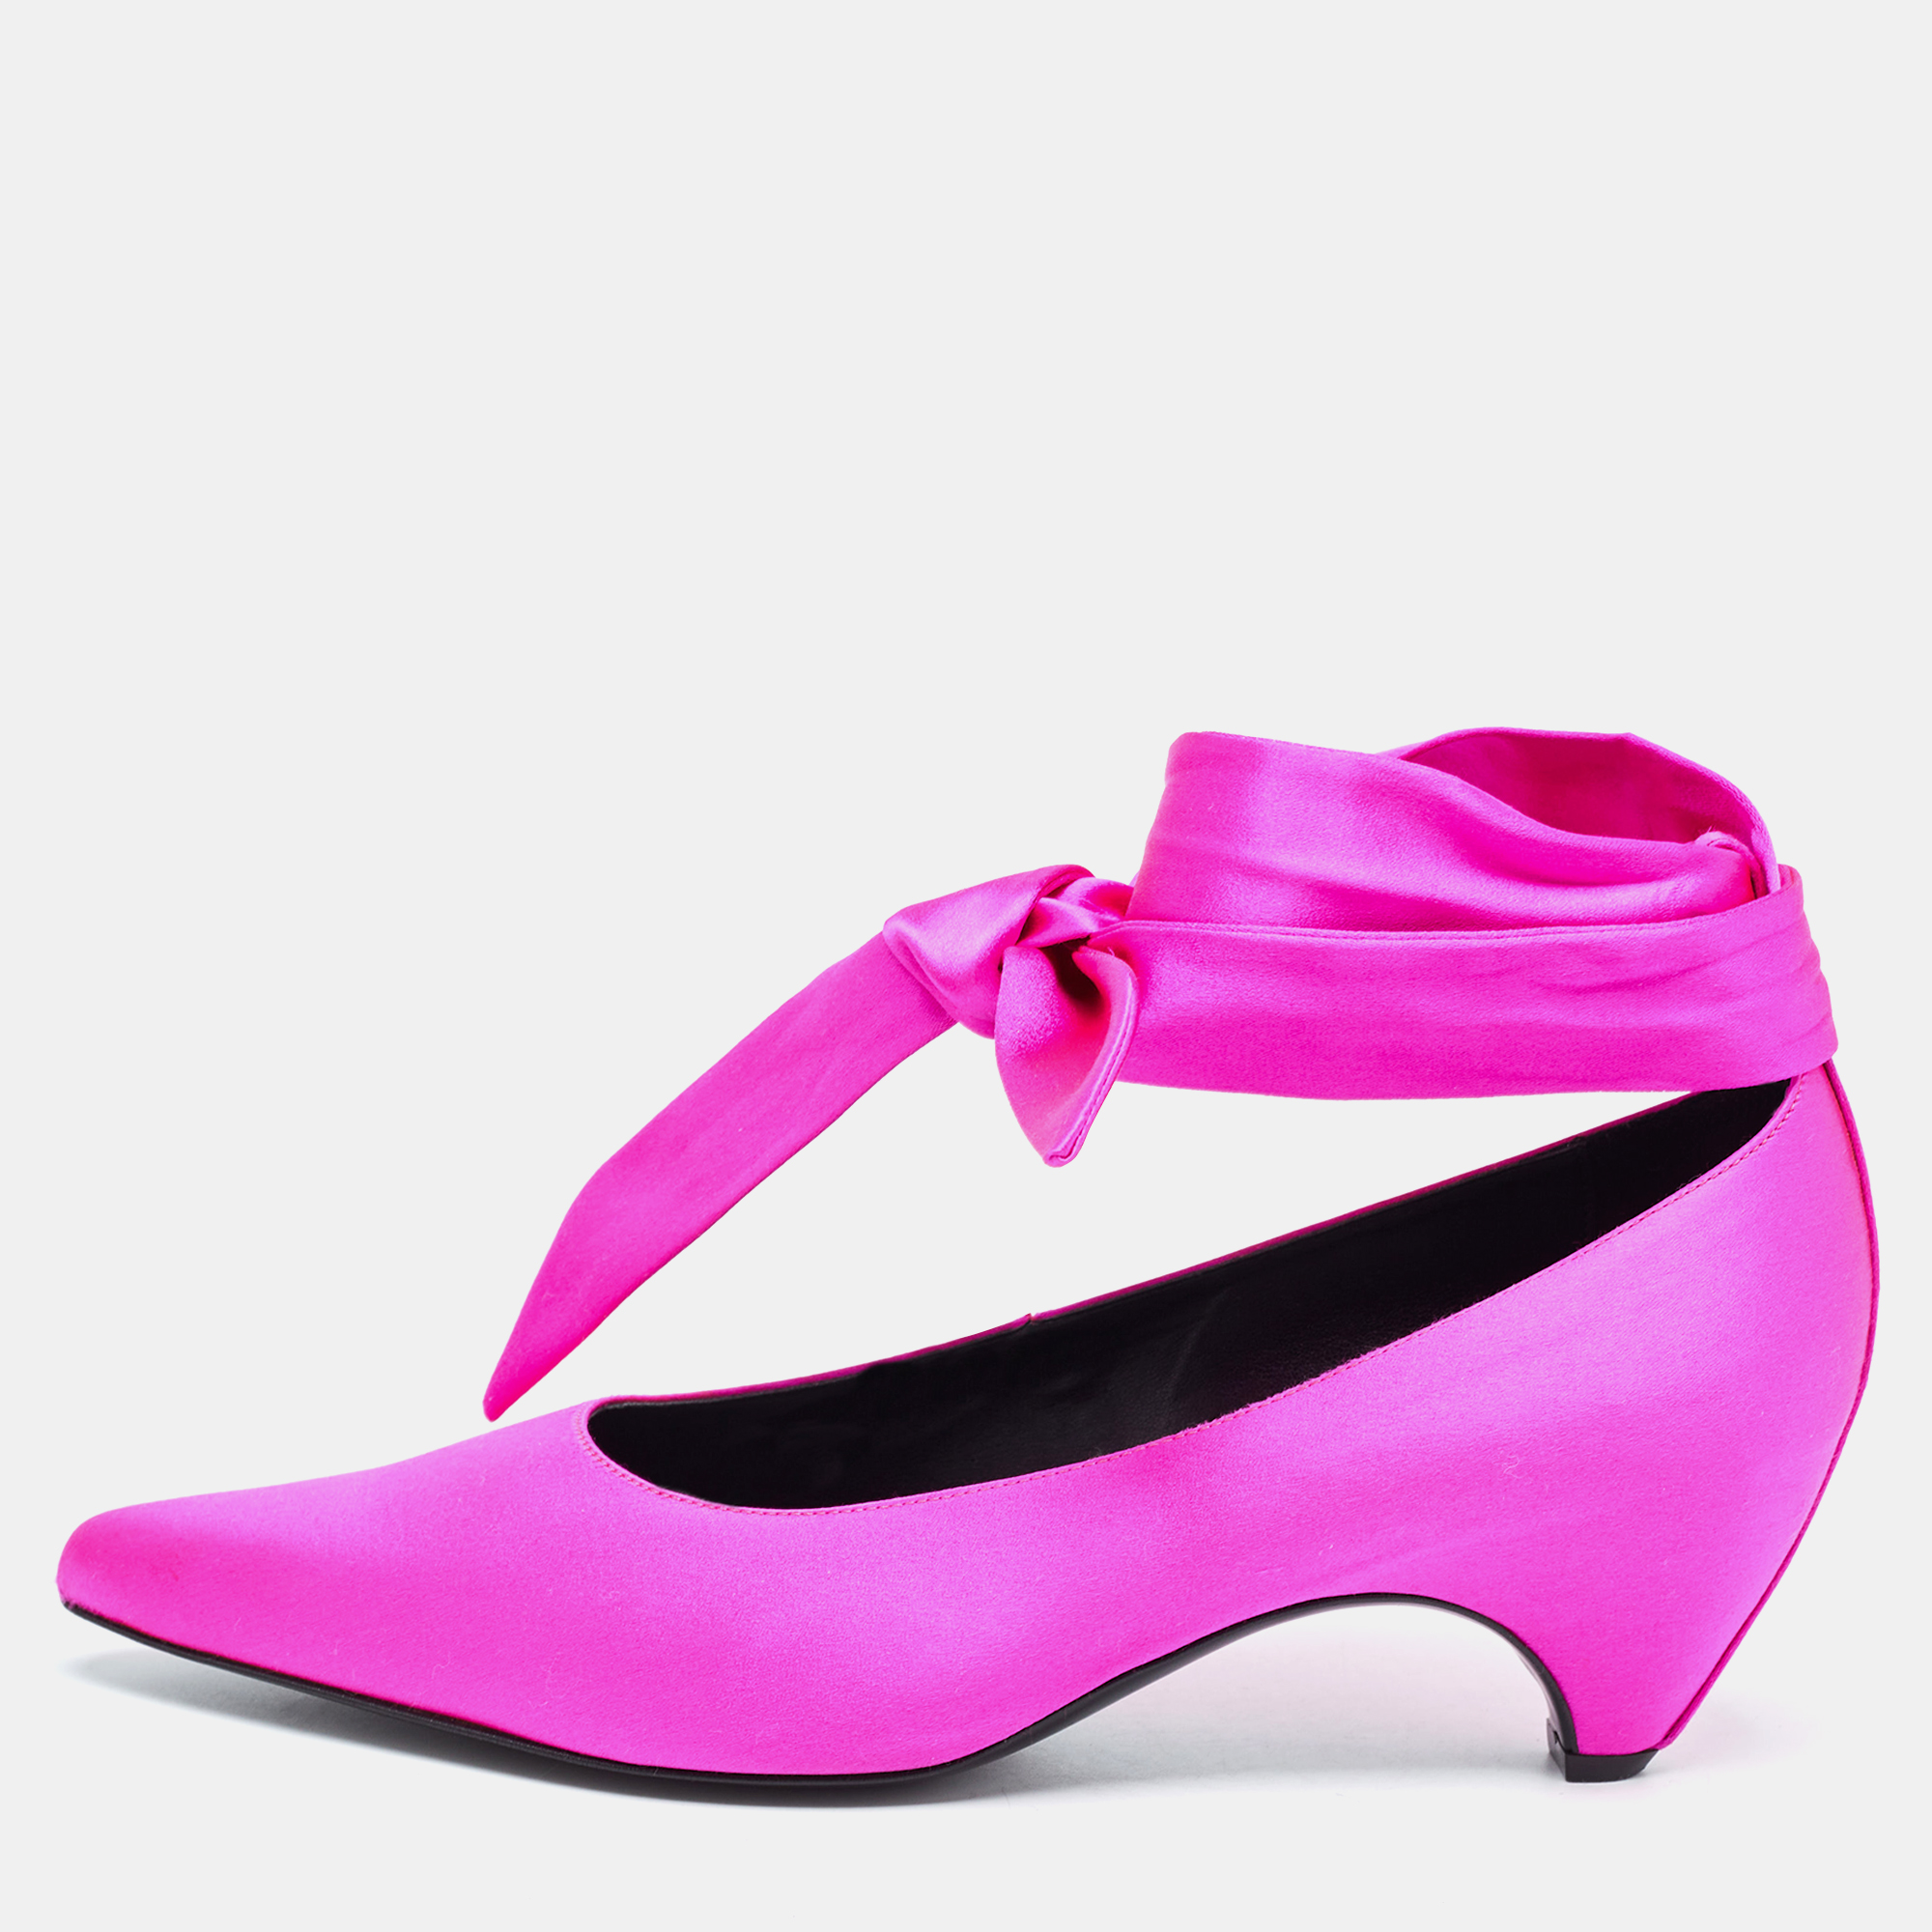 Stella mccartney pink satin ankle wrap pumps size 39